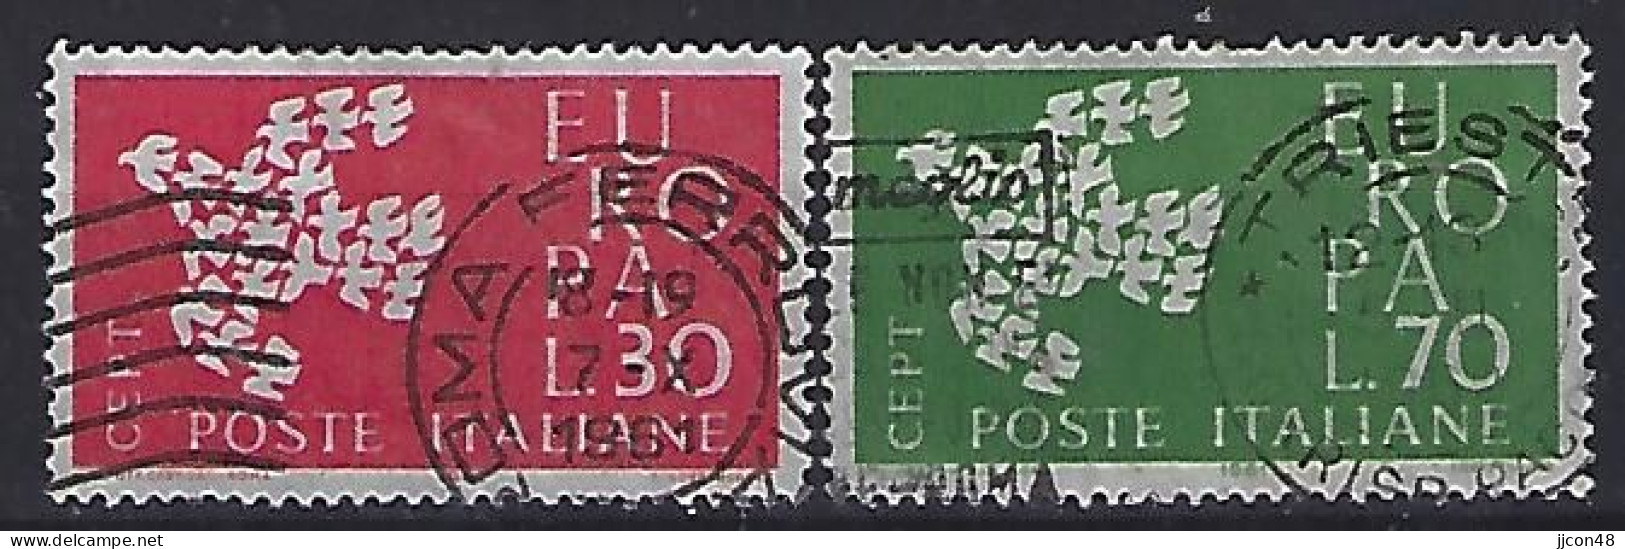 Italy 1961  Europa  (o) Mi.1113-1114 - 1961-70: Usados